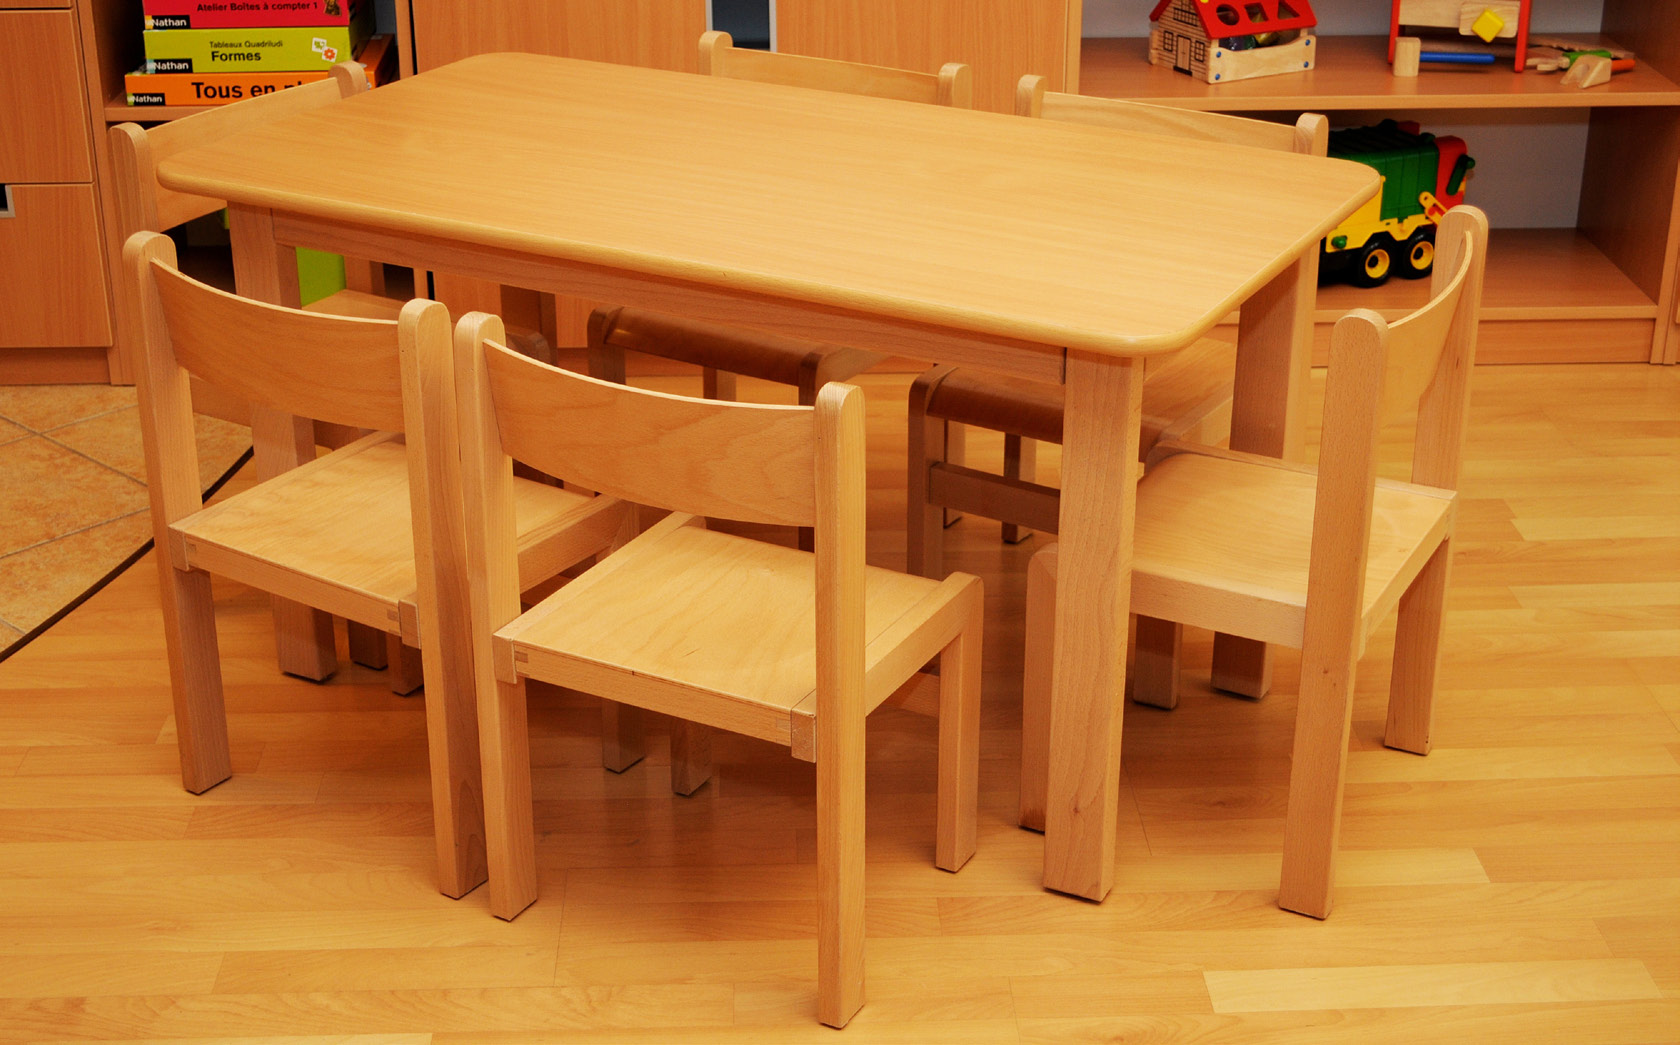 Fair Play asztalok Fair Play asztalok elônyei: - az asztallap vastagsága 8 mm, a szélein minôségi mûanyag élekkel - az asztallap könnyen lemosható és ellenálló a karcolásokkal szemben - az élek és